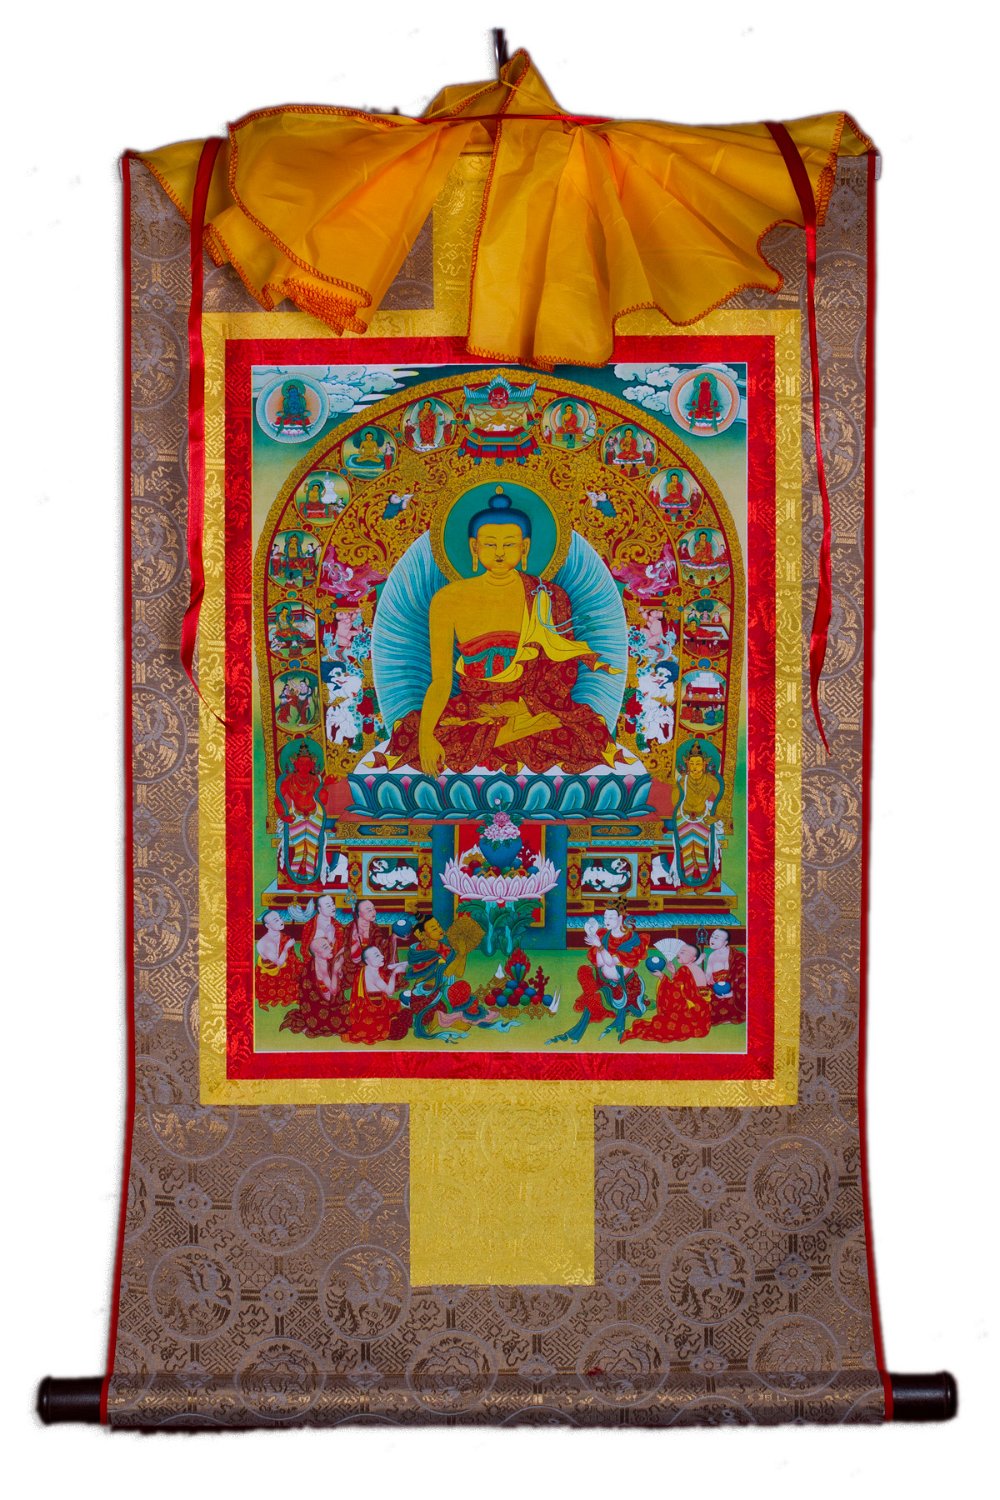 Тханка Будда Шакьямуни в окружении знаменательных событий из жизни (печатная, ~51 х 83 см), ~ 51 х 83 см, изображение: ~ 32 х 45 см